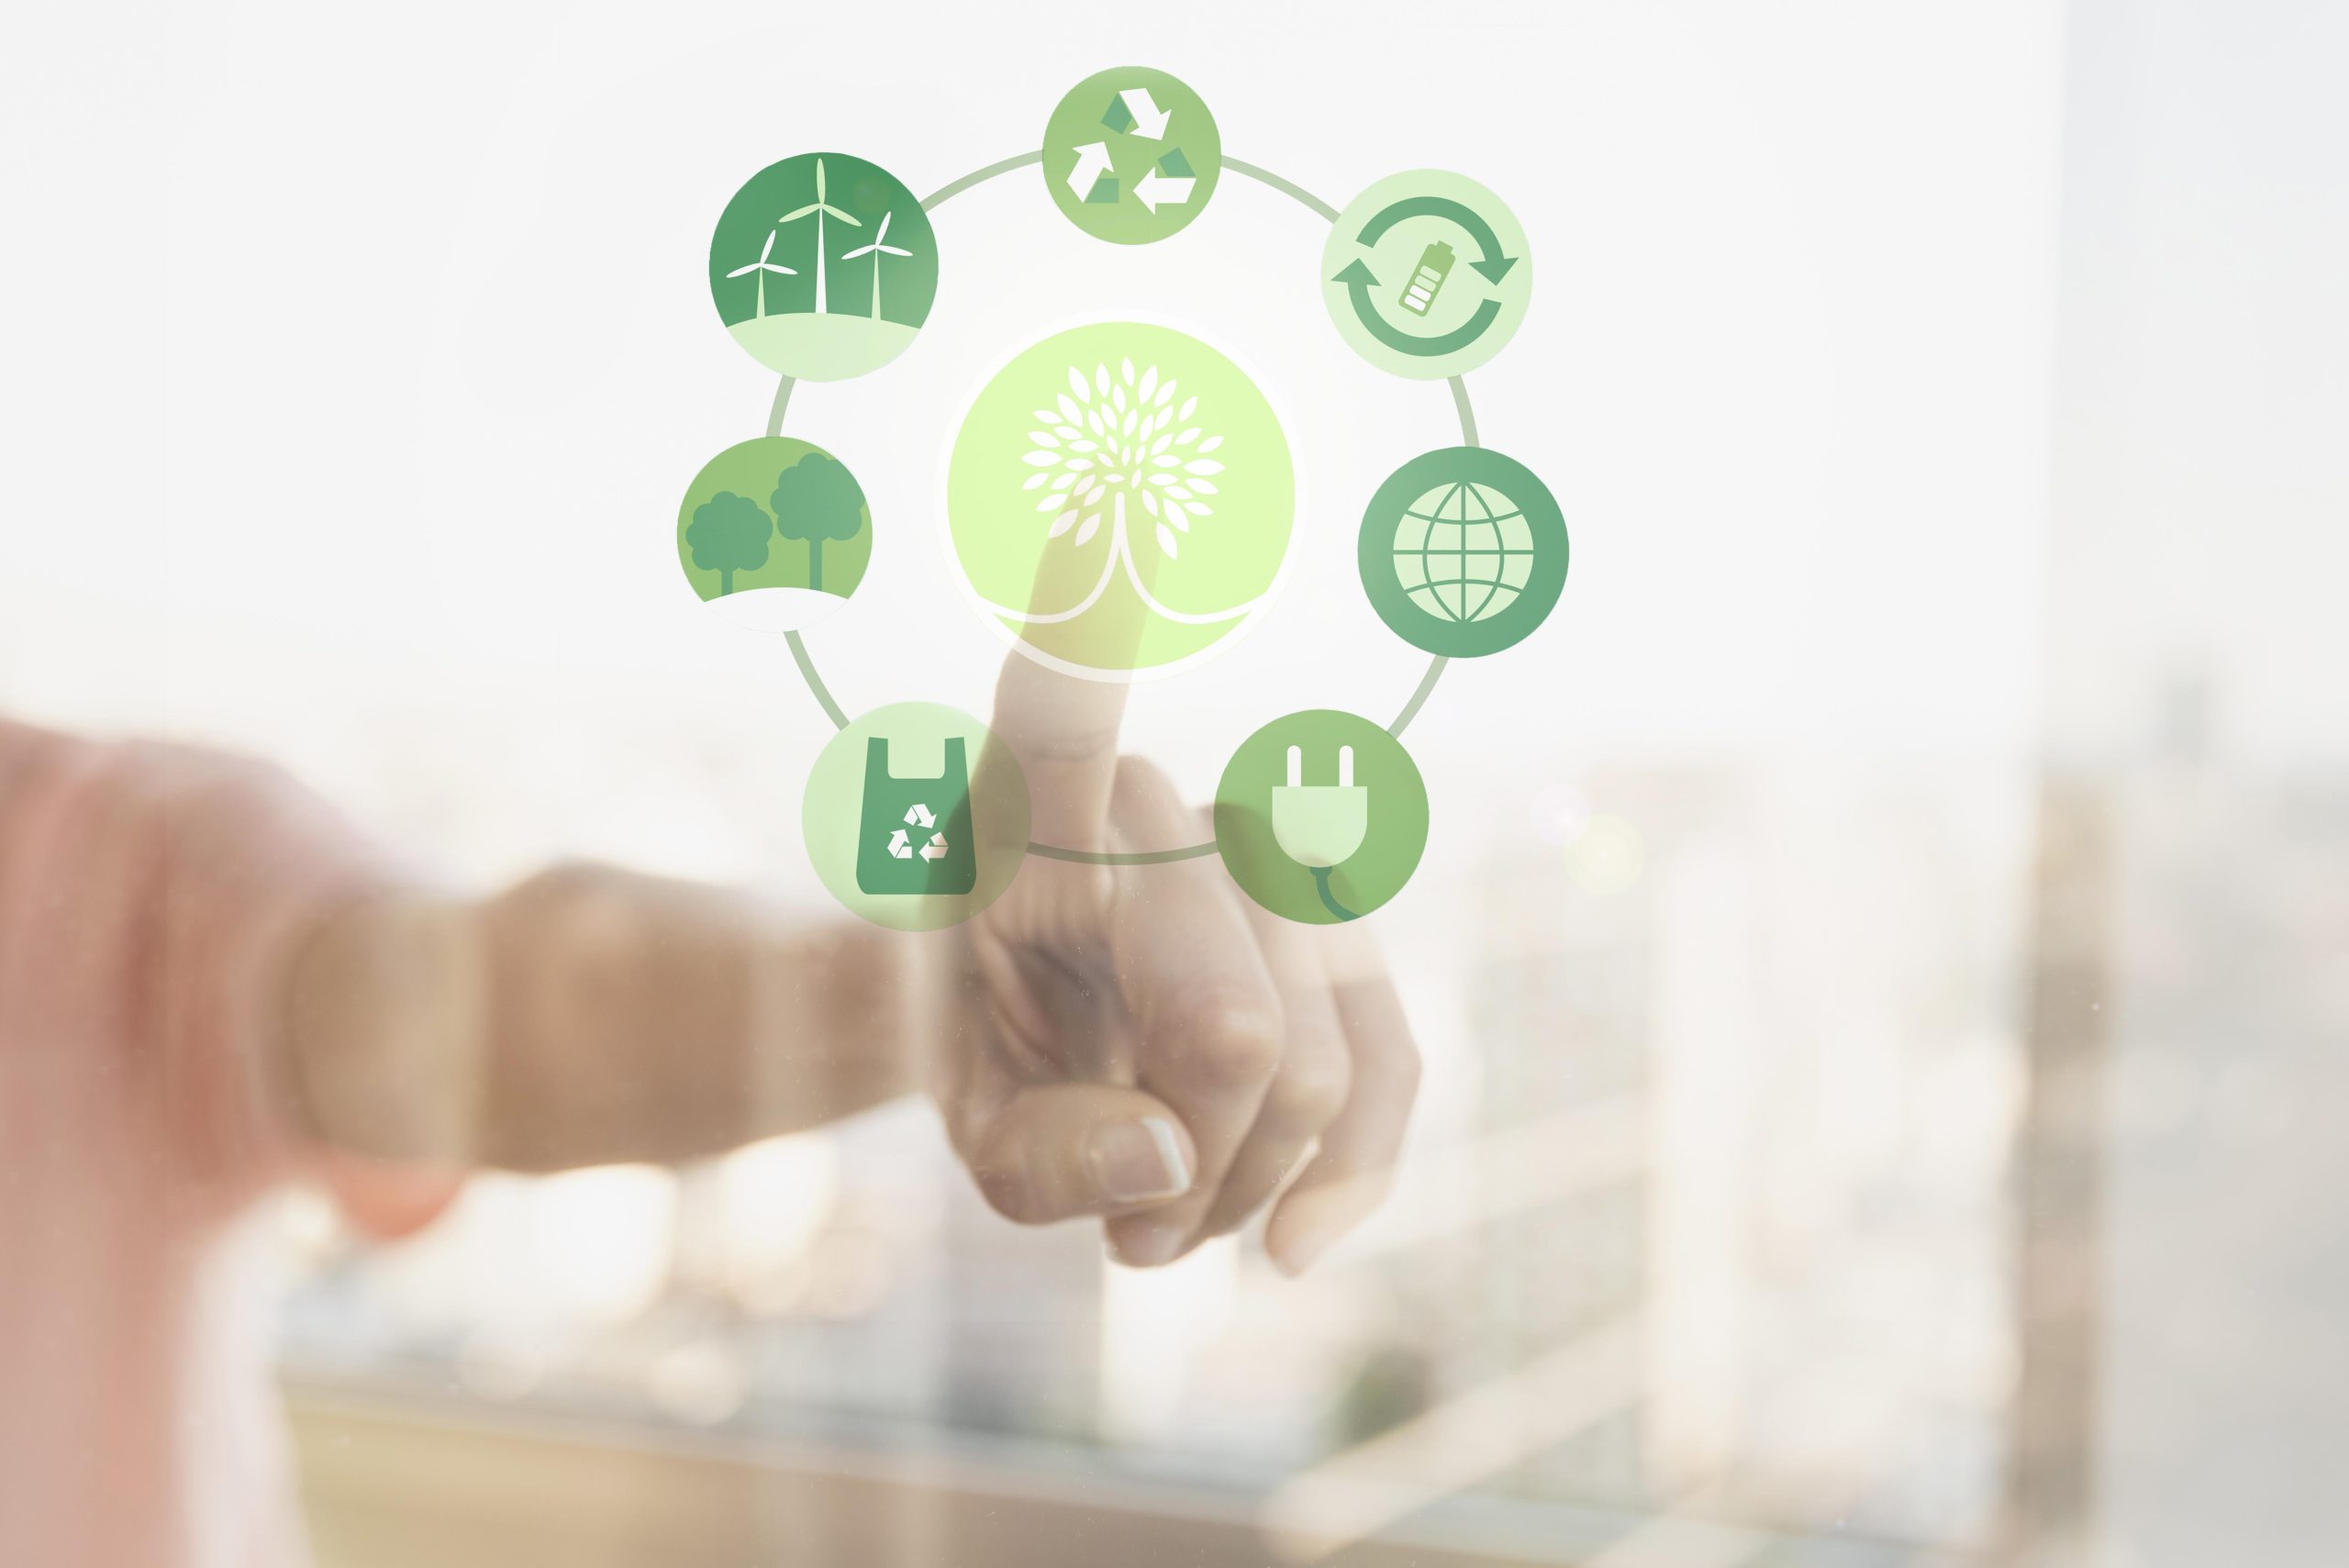 Featured image for “Setor de Tecnologia, Mídia e Telecomunicações amplia visibilidade de práticas ESG”